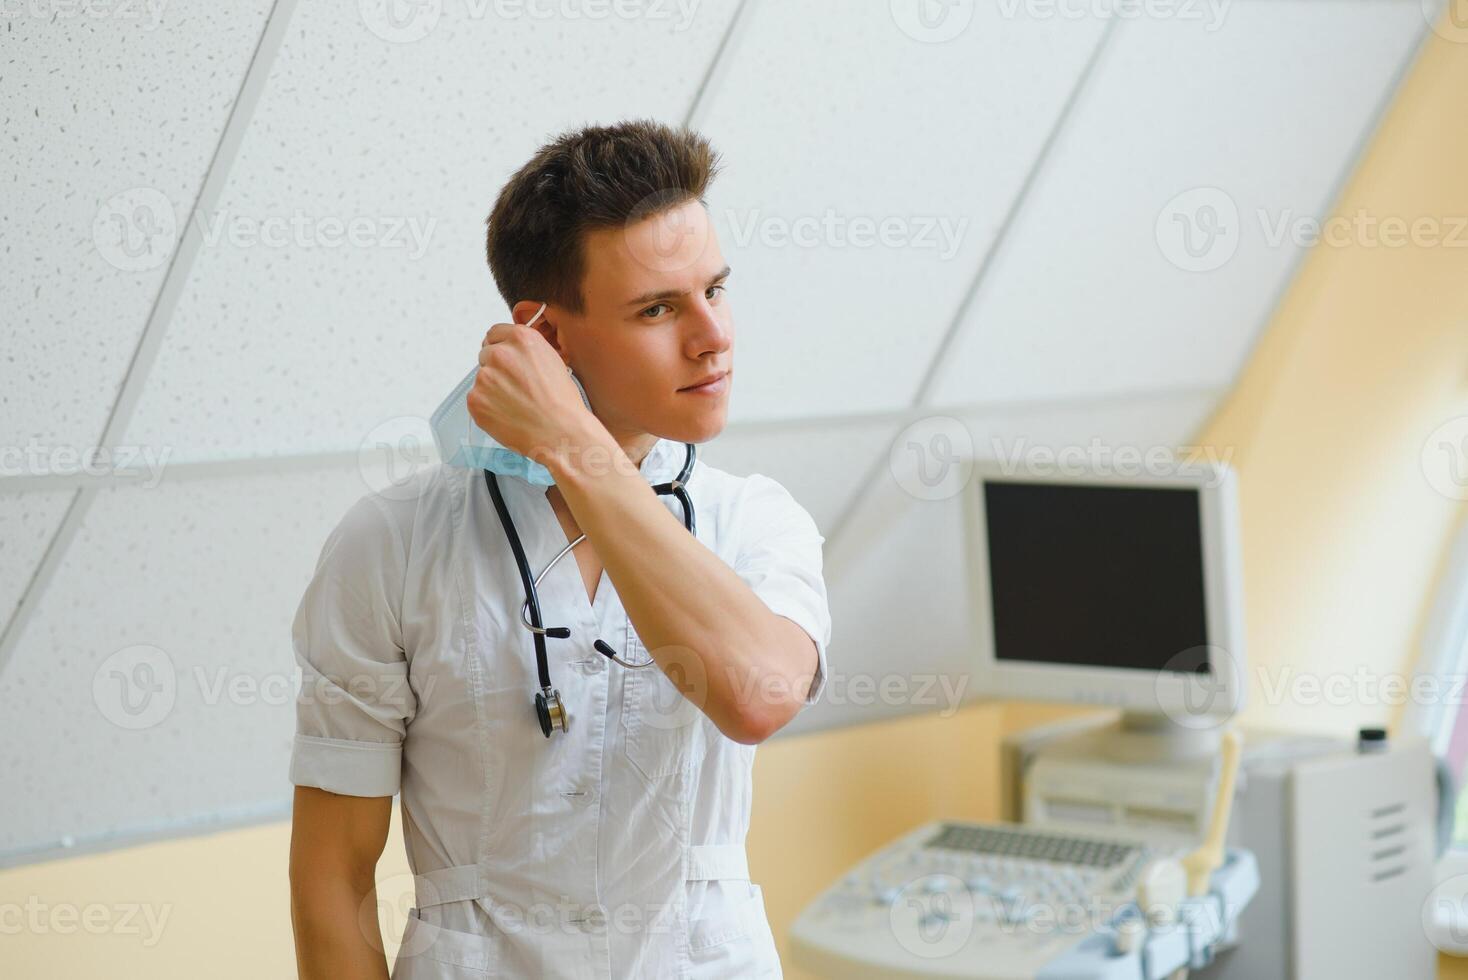 mannetje dokter in masker met echografie uitrusting in de kliniek kantoor foto